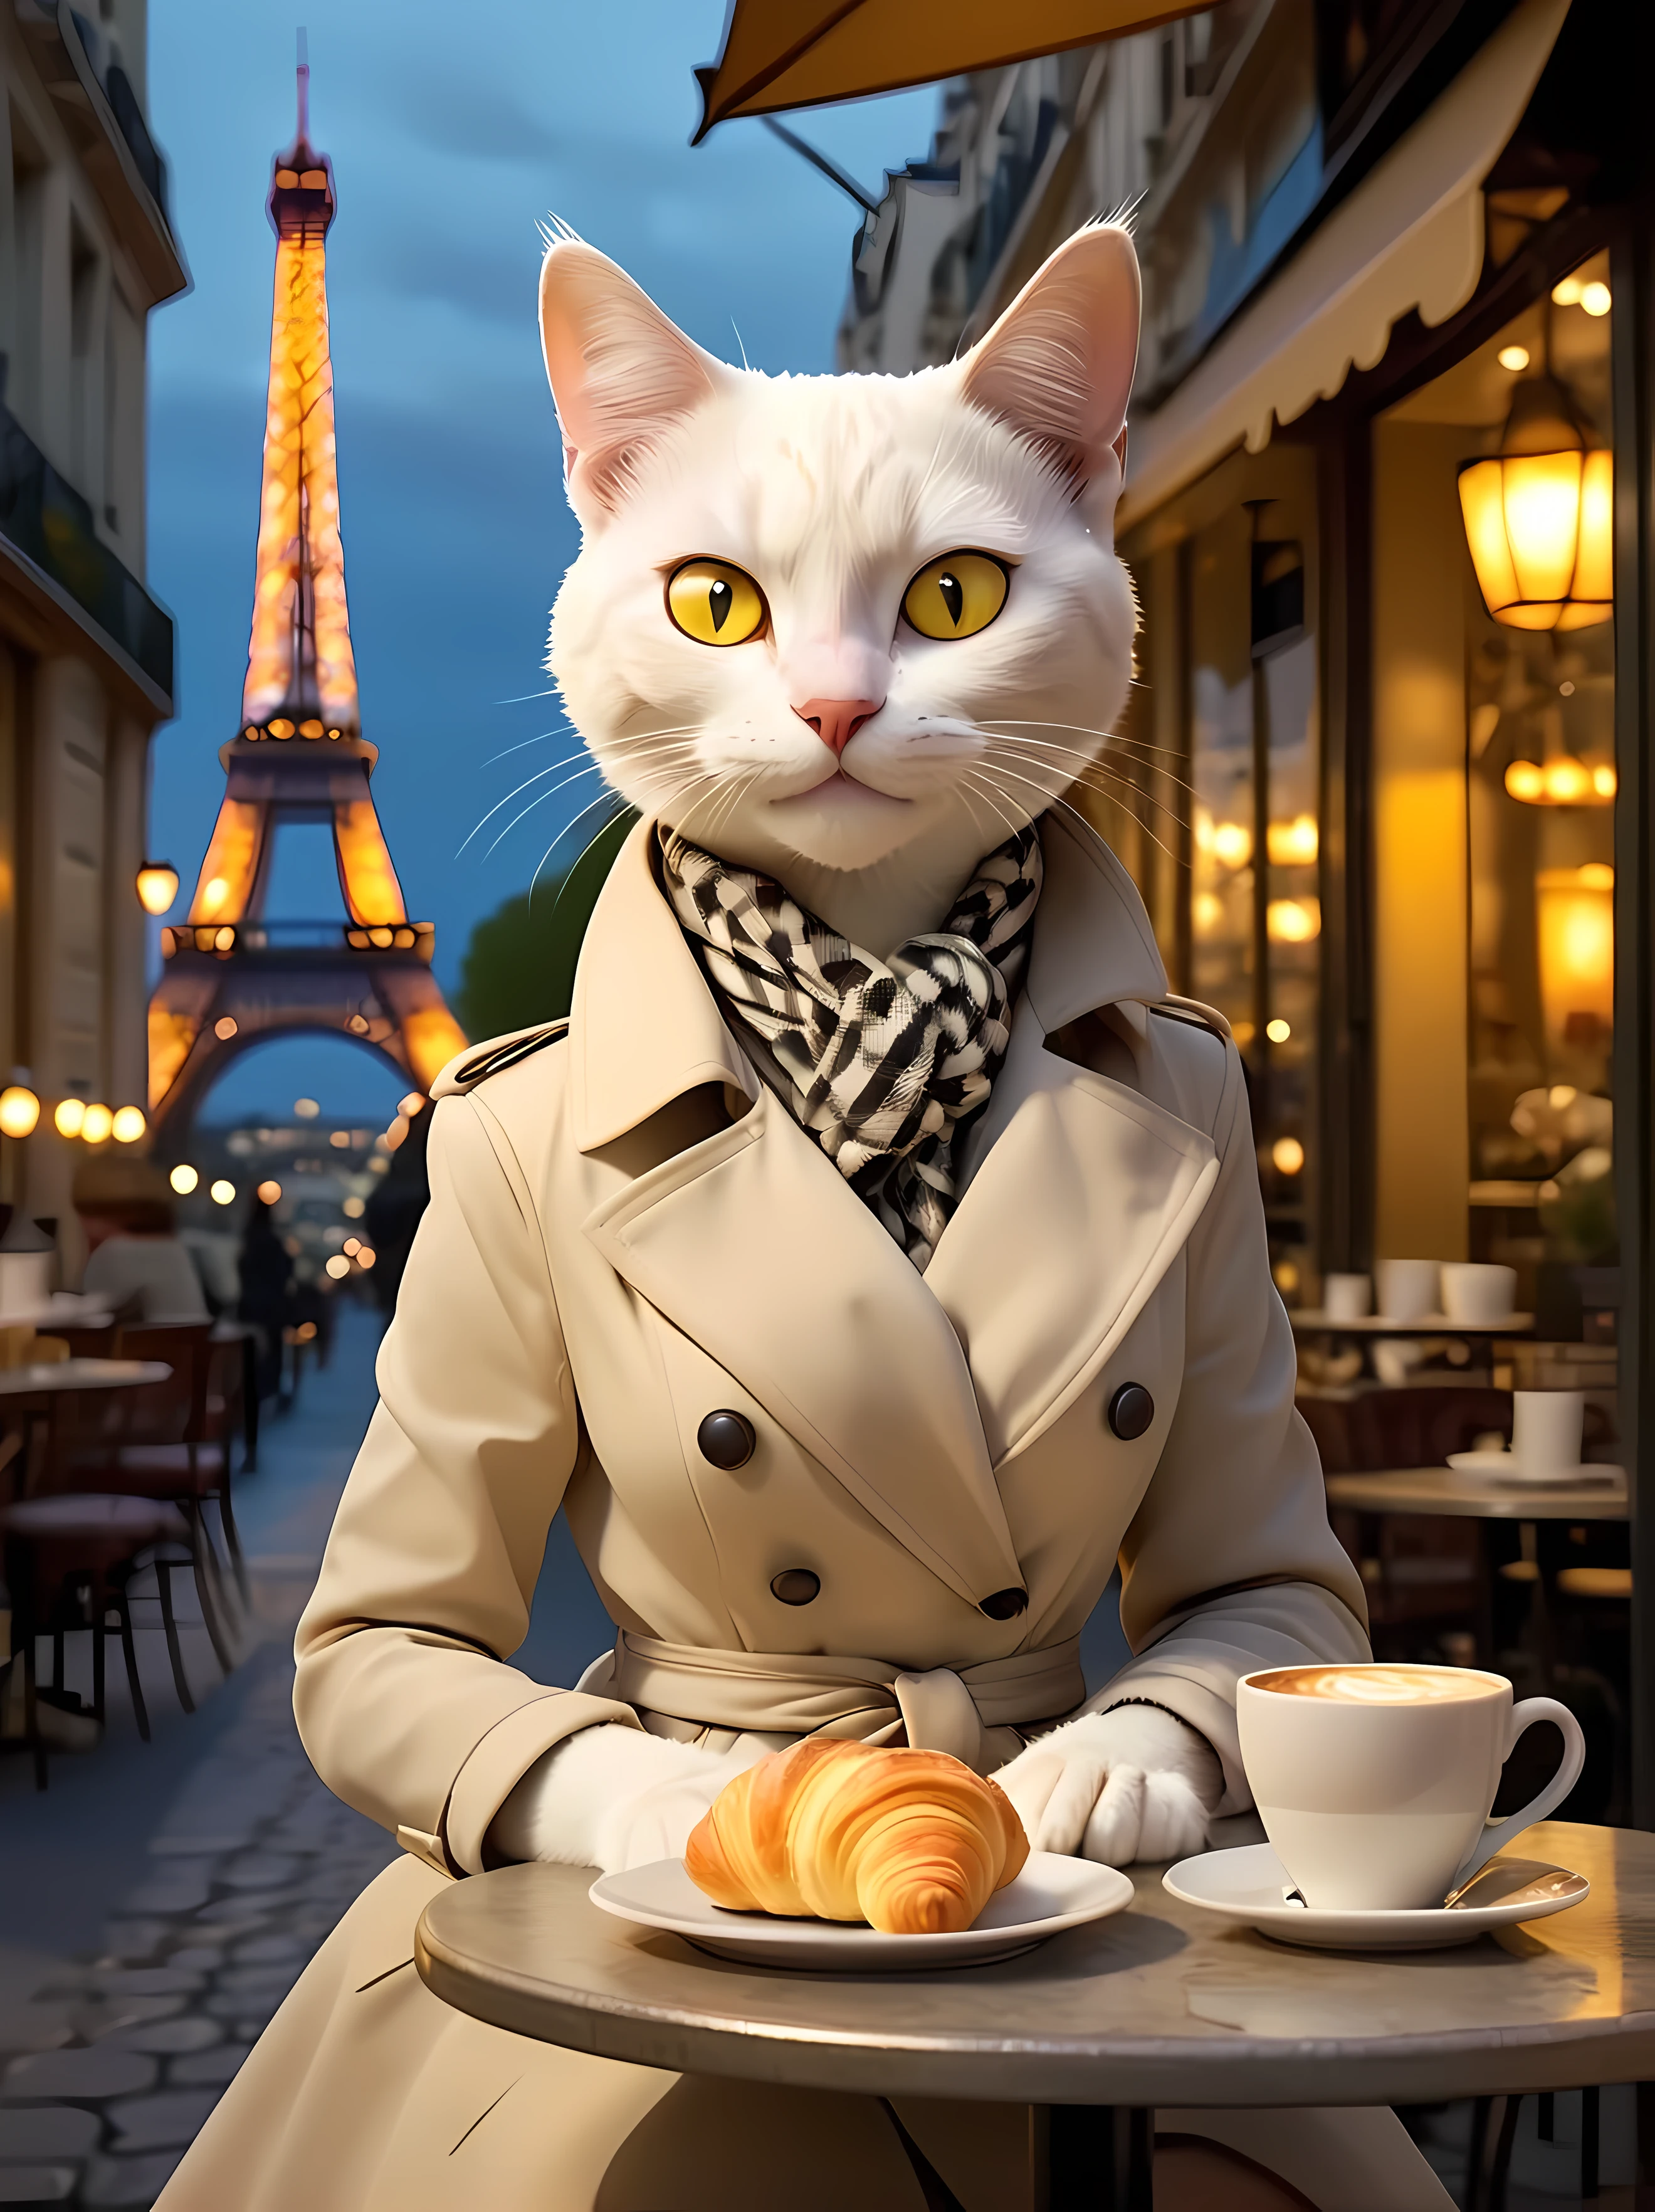 魅力的な魅力的なイメージをデザインする ((擬人化された)) 夜、クロワッサンと湯気の立つ濃厚なコーヒーを片手に、小さなビストロのテーブルに優雅に座る白猫, 着ている (ファッショナブル) シックなパリジャンの服装, 控えめな千鳥格子模様のスタイリッシュな膝丈トレンチコート, シルクスカーフ, 居心地の良いカフェの雰囲気, 温かく居心地の良い雰囲気を醸し出しています, ロマンチックなパリの雰囲気, 柔らかい間接照明. | 遠くに見えるエッフェル塔のシルエット. | 鮮やかな黄色い目, スパークリング, ((視聴者に直接微笑む)), ((すごい)). | ((もっと_詳細))
